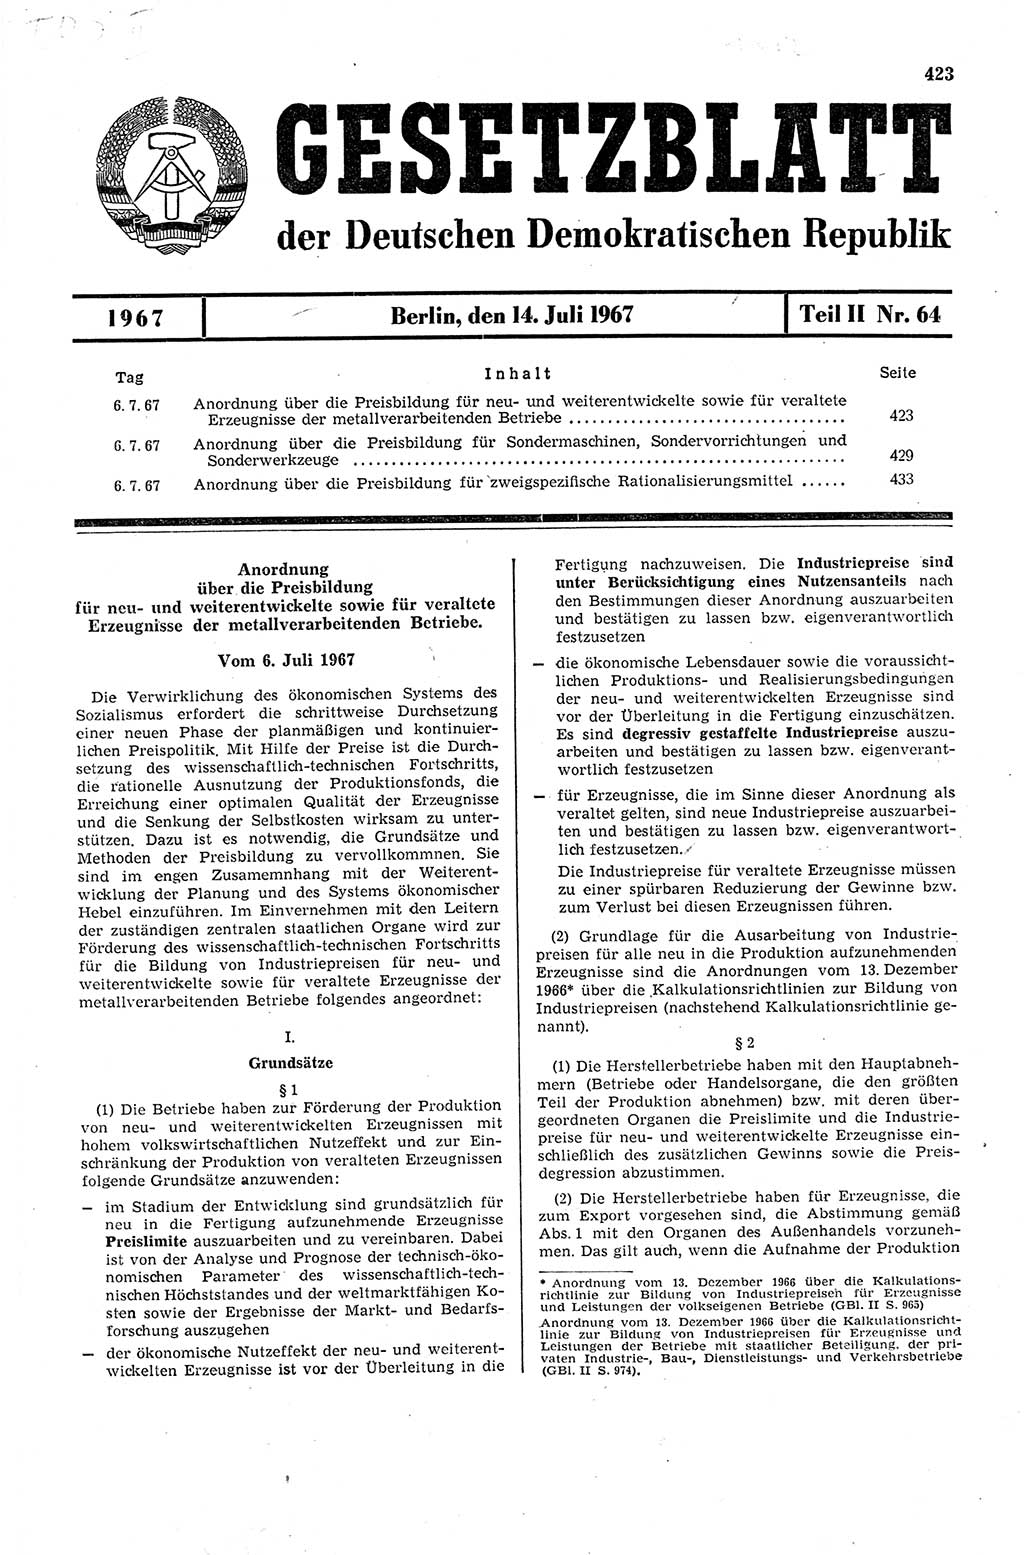 Gesetzblatt (GBl.) der Deutschen Demokratischen Republik (DDR) Teil ⅠⅠ 1967, Seite 423 (GBl. DDR ⅠⅠ 1967, S. 423)